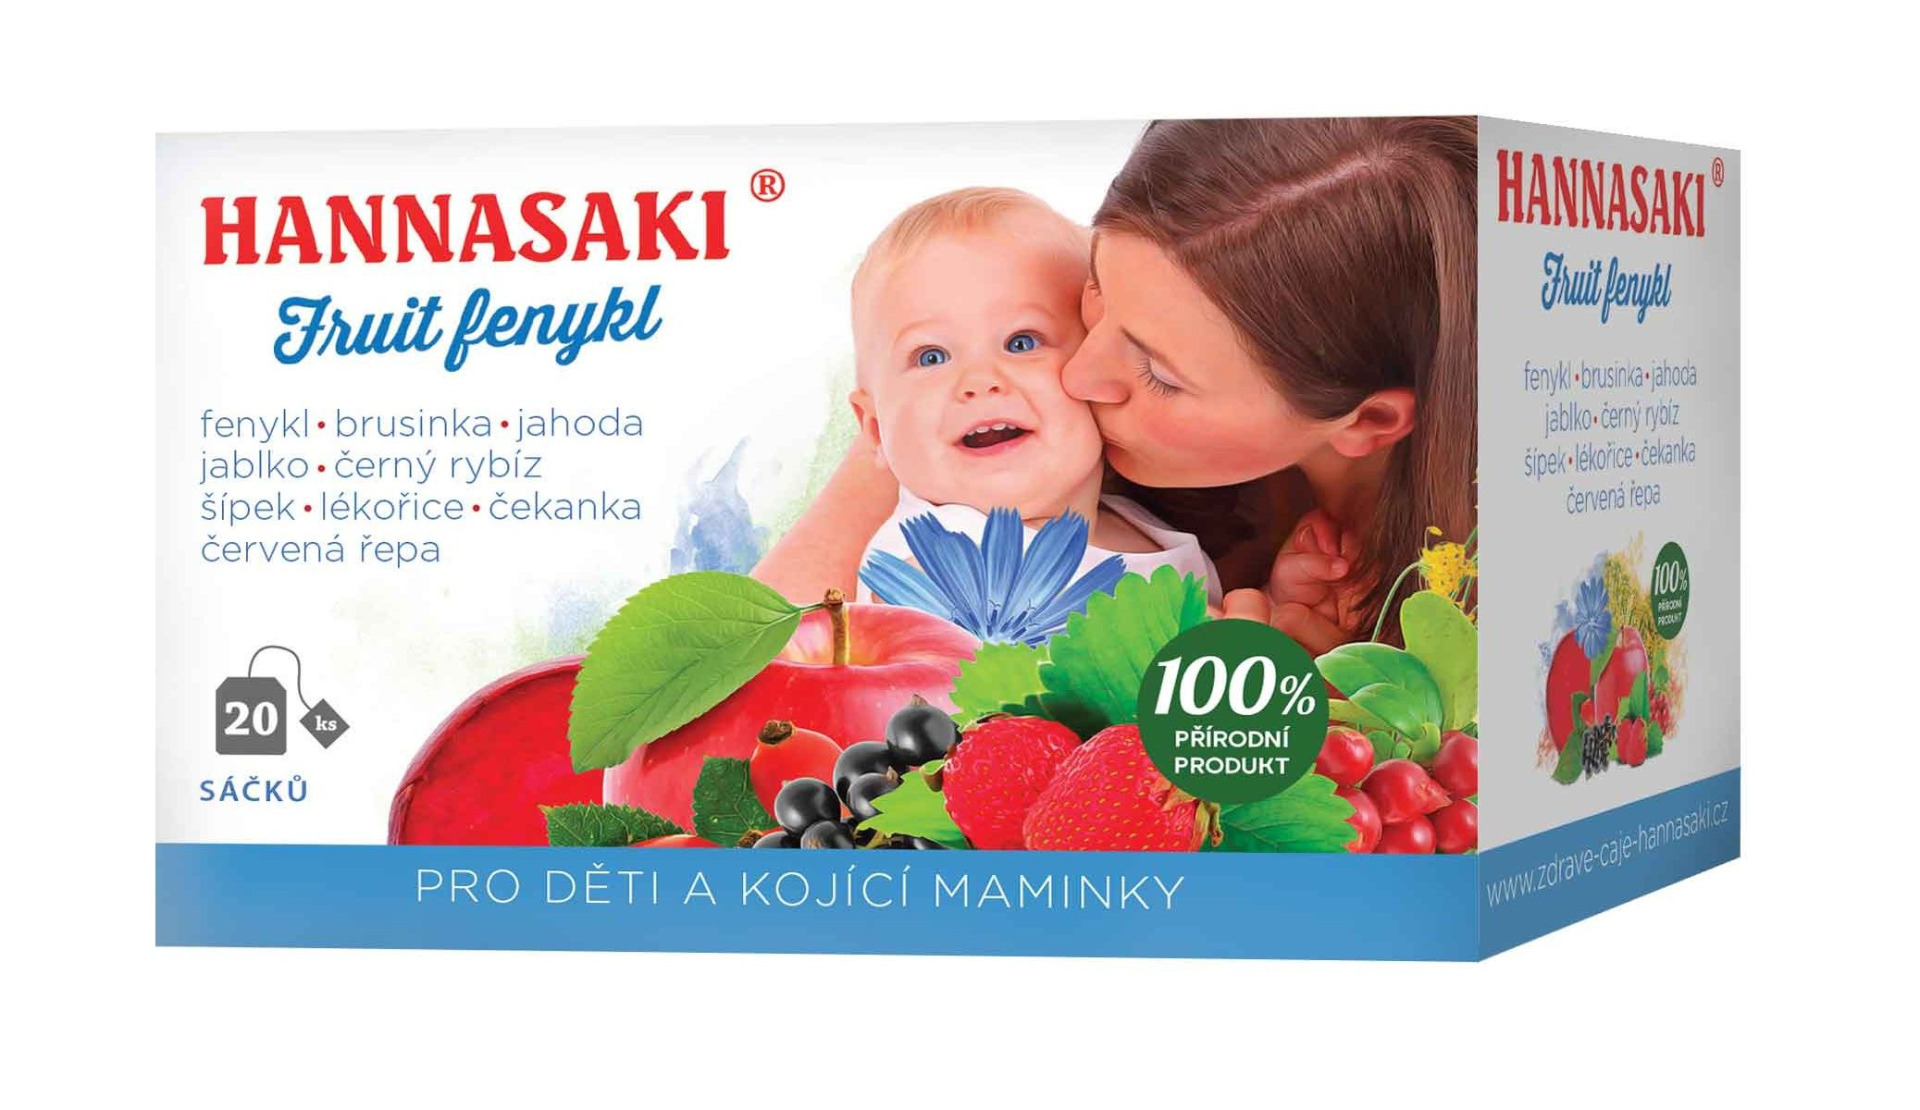 Hannasaki Fruit Fenykl pro děti a kojící maminky 20 sáčků Hannasaki